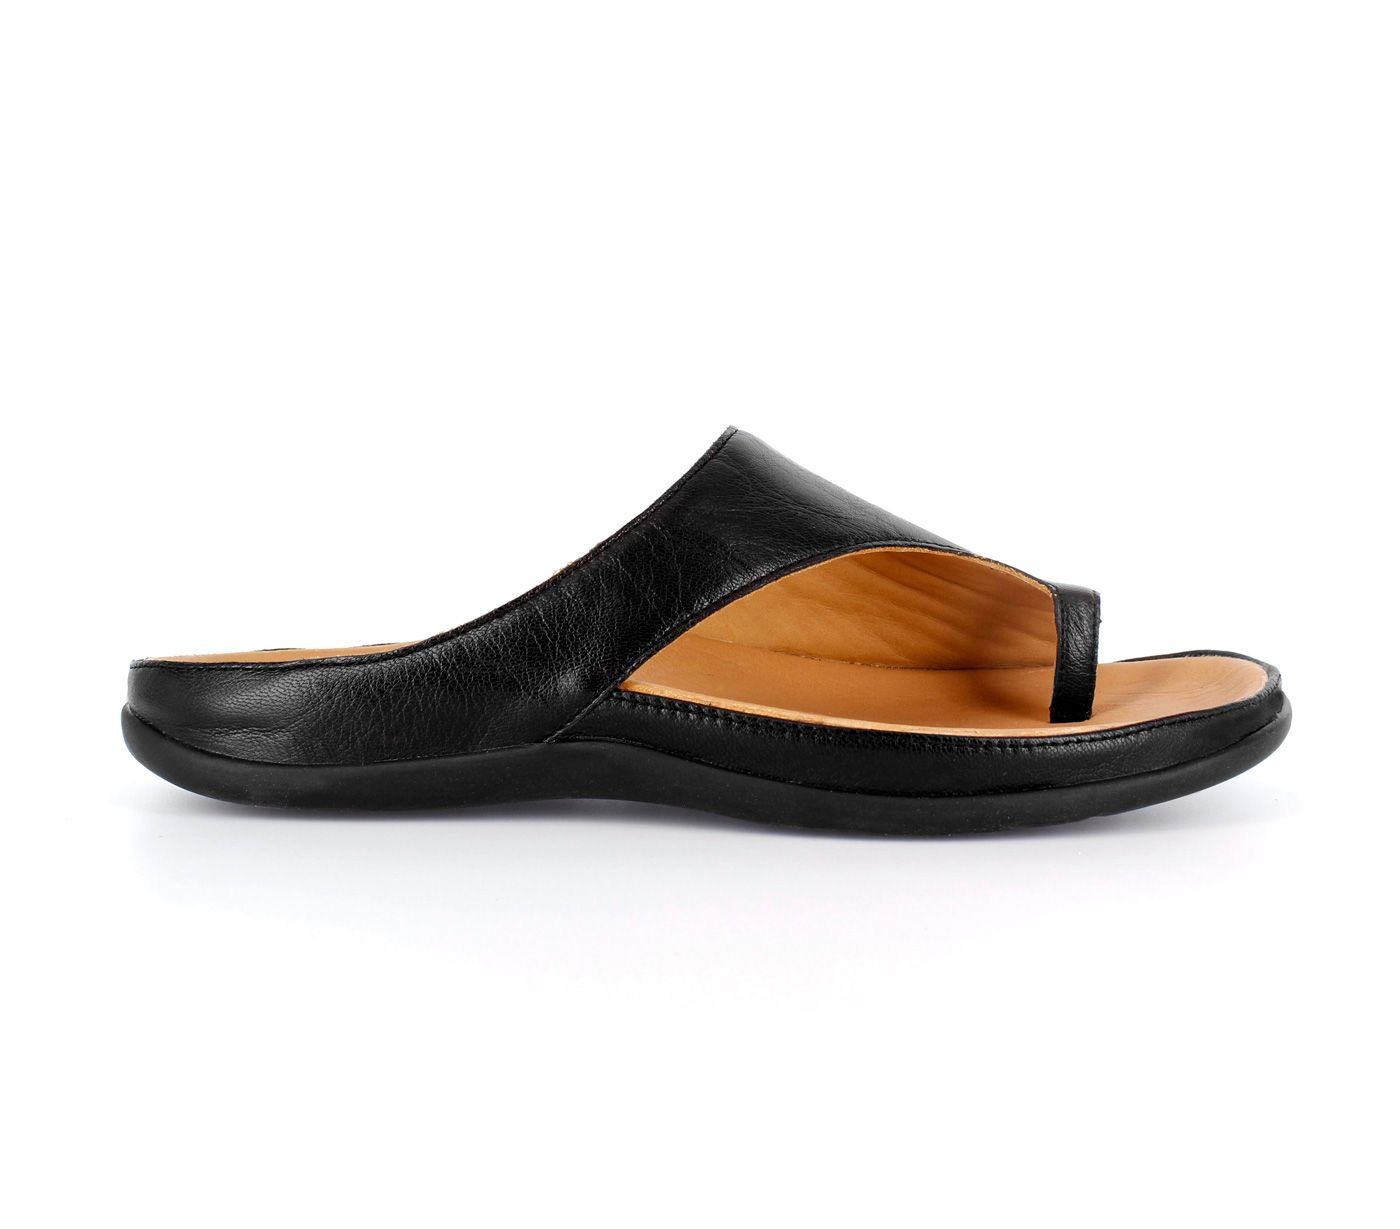 Strive Footwear Capri Women's Sandals